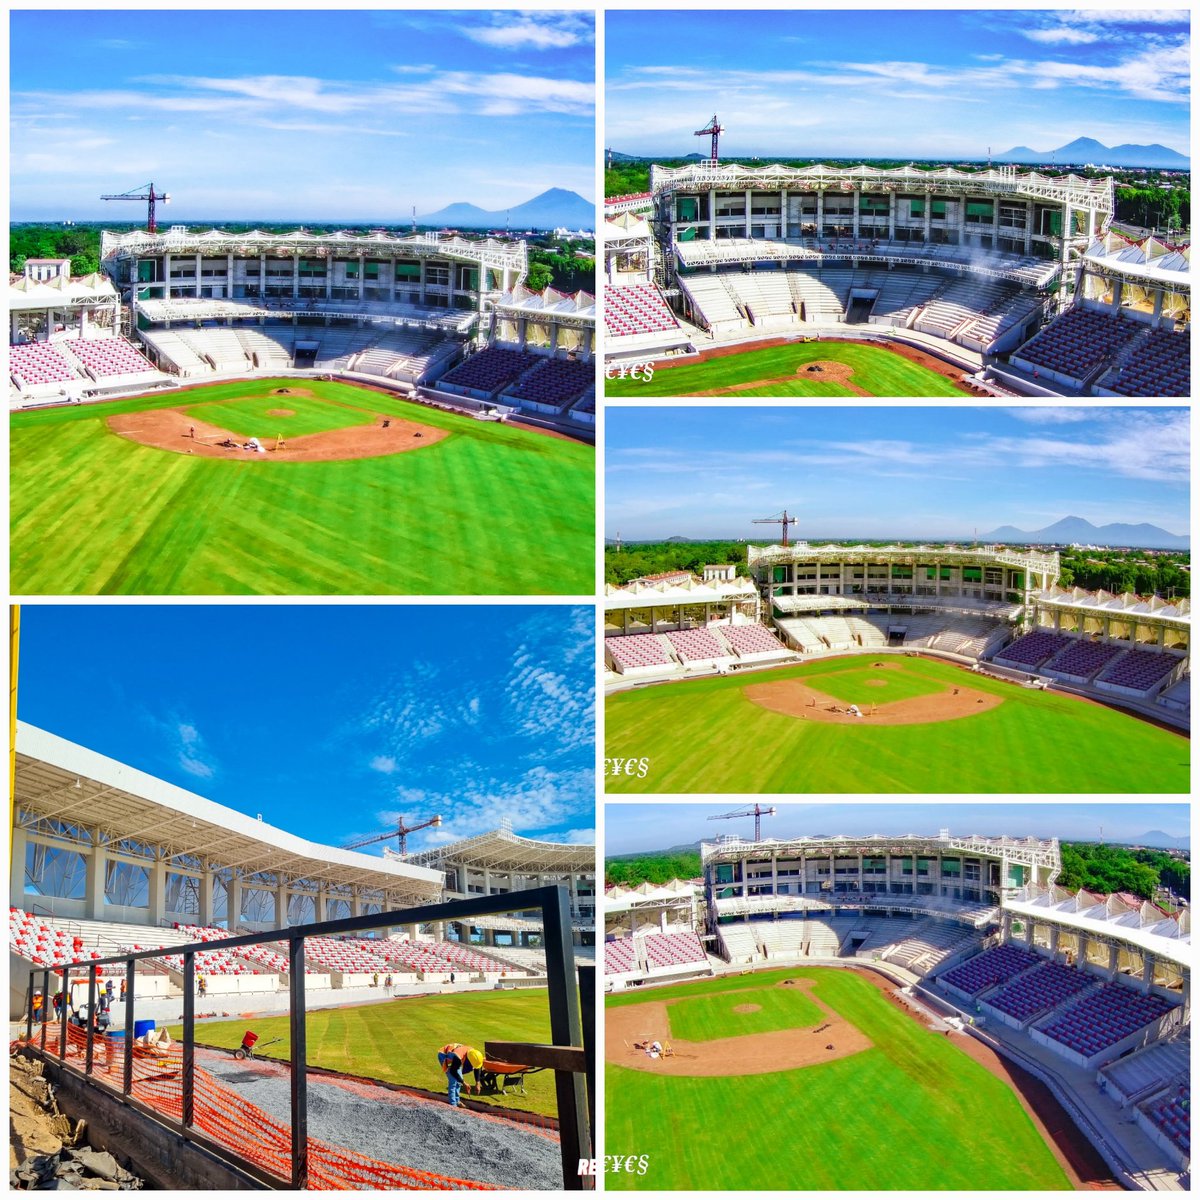 💥⚾️El Estadio de Béisbol de León avanza a pasos acelerados en su construcción; pronto estará listo para la fanáticada leonesa. @FerminVallejos1 @yadercino_zen @Atego16 #UnidosEnVictorias Nicaragua